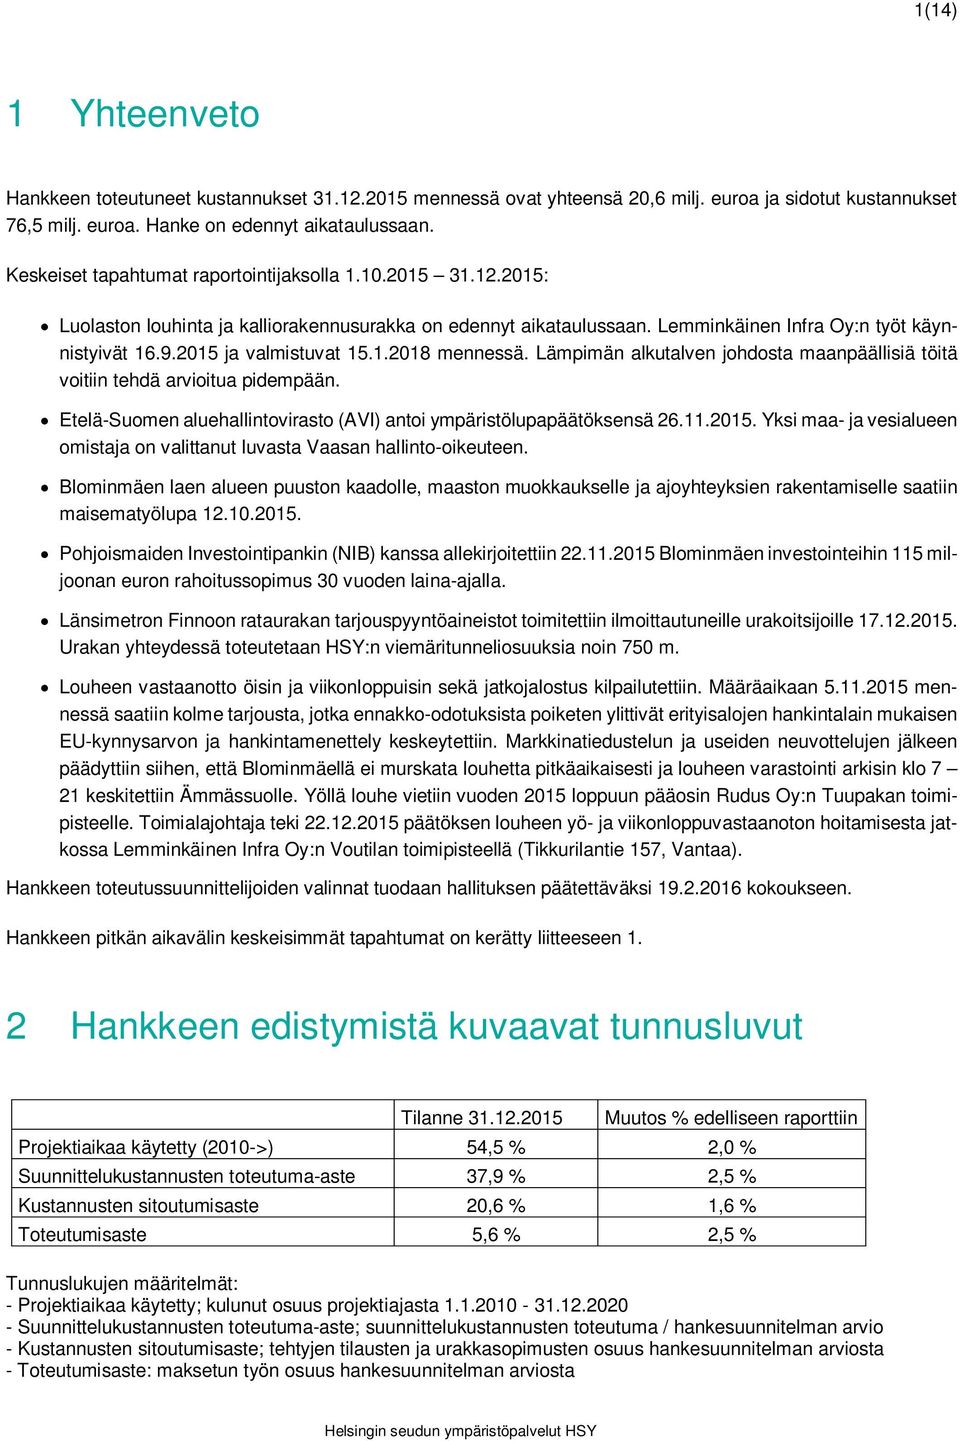 2015 ja valmistuvat 15.1.2018 mennessä. Lämpimän alkutalven johdosta maanpäällisiä töitä voitiin tehdä arvioitua pidempään. Etelä-Suomen aluehallintovirasto (AVI) antoi ympäristölupapäätöksensä 26.11.